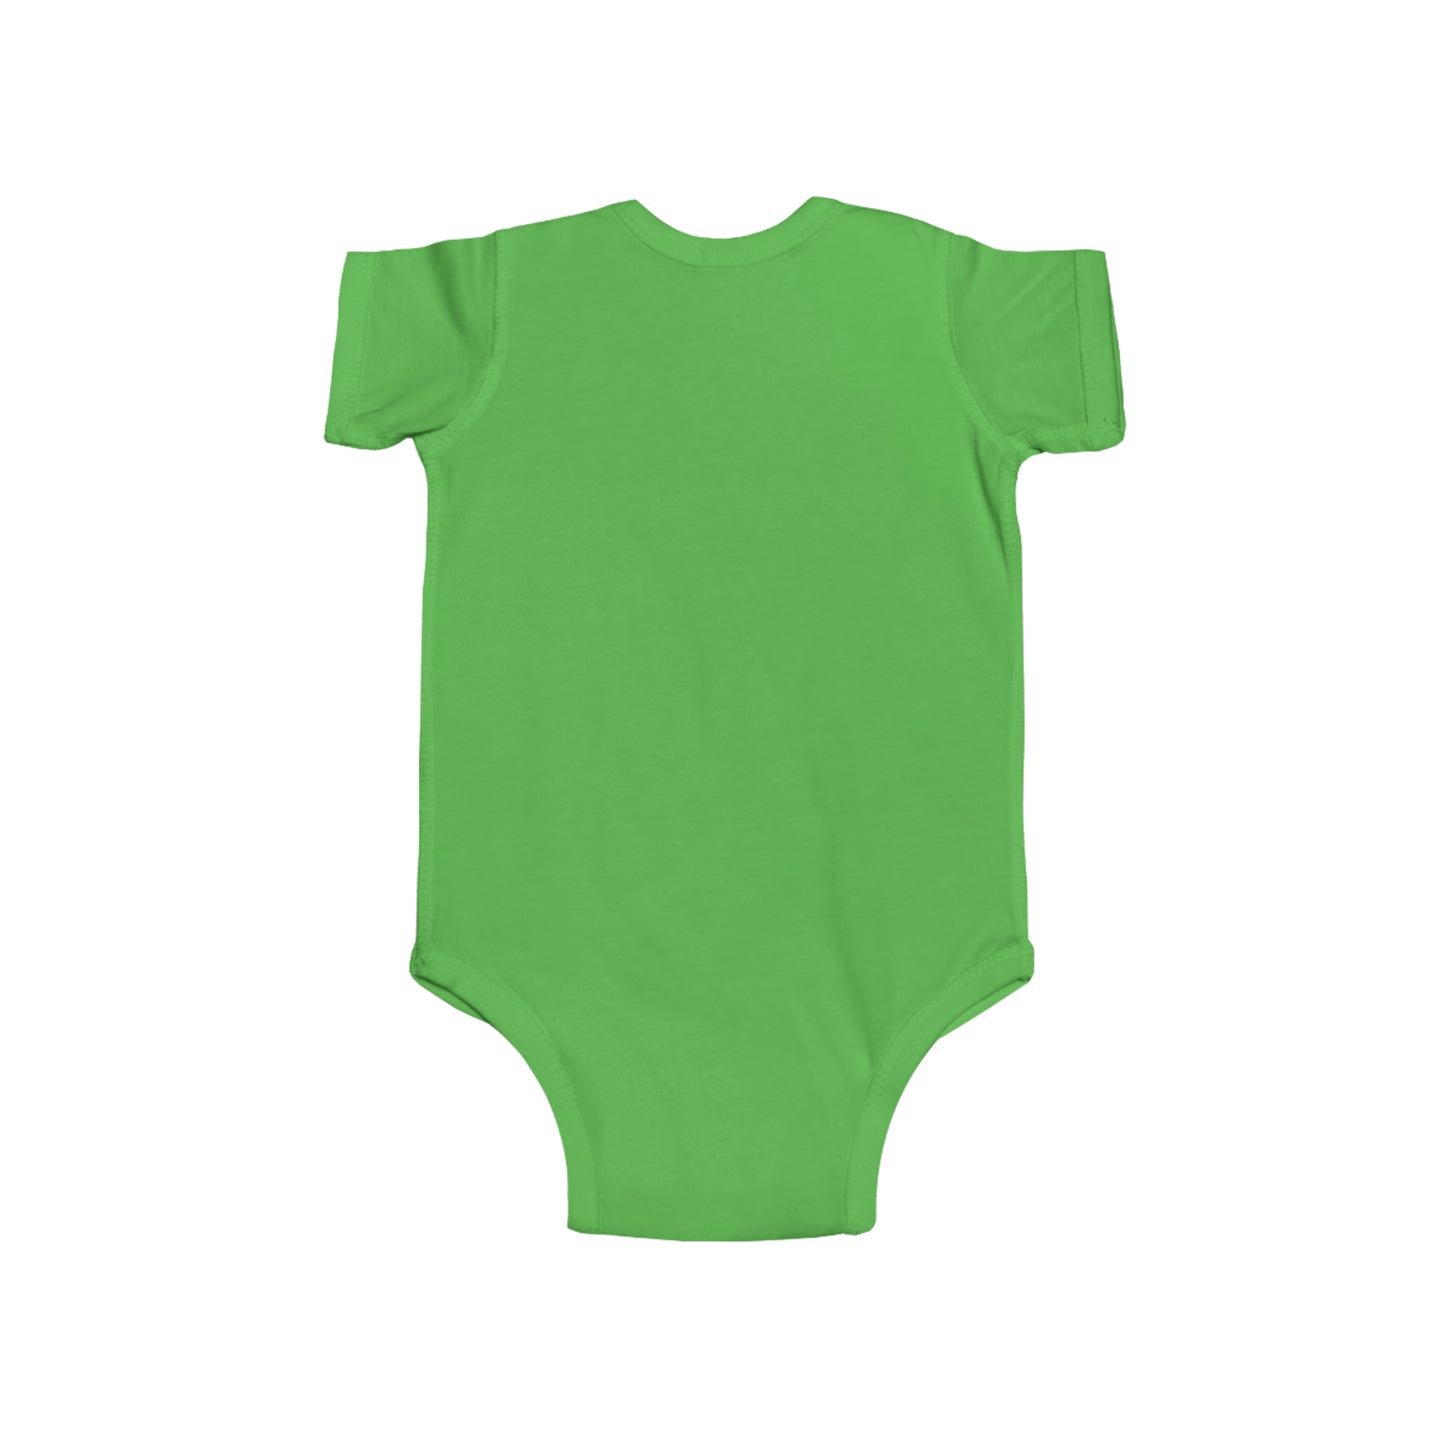 Body en jersey fin pour bébé, personnalisé avec le message : "Petit champion du sommeil, médaille d'or des siestes